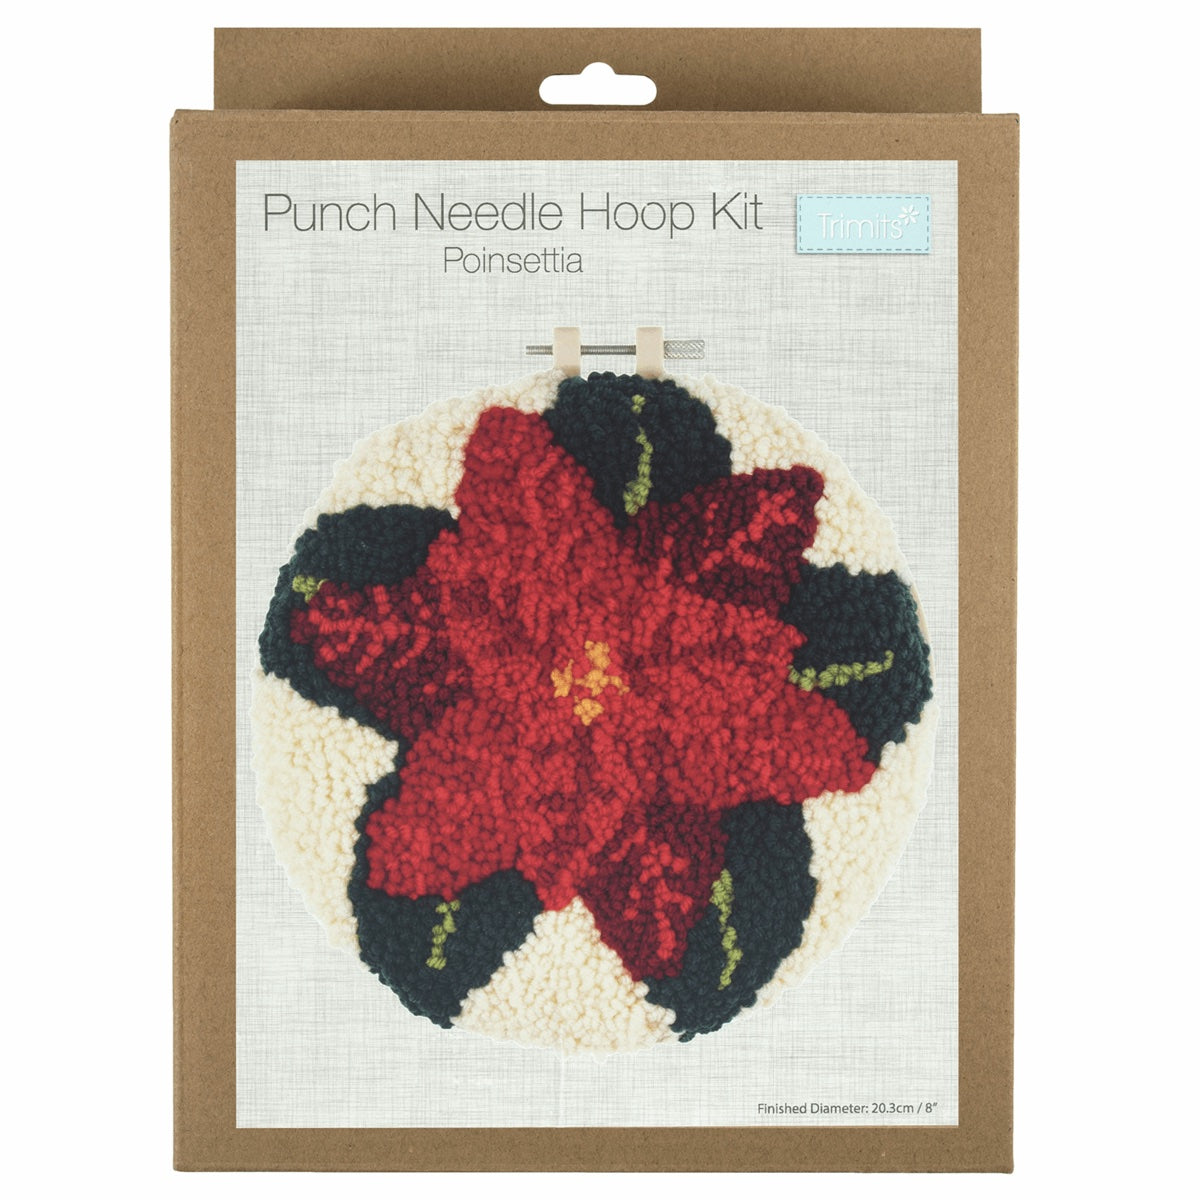 Poinsettia - Punch Needle Hoop Kit